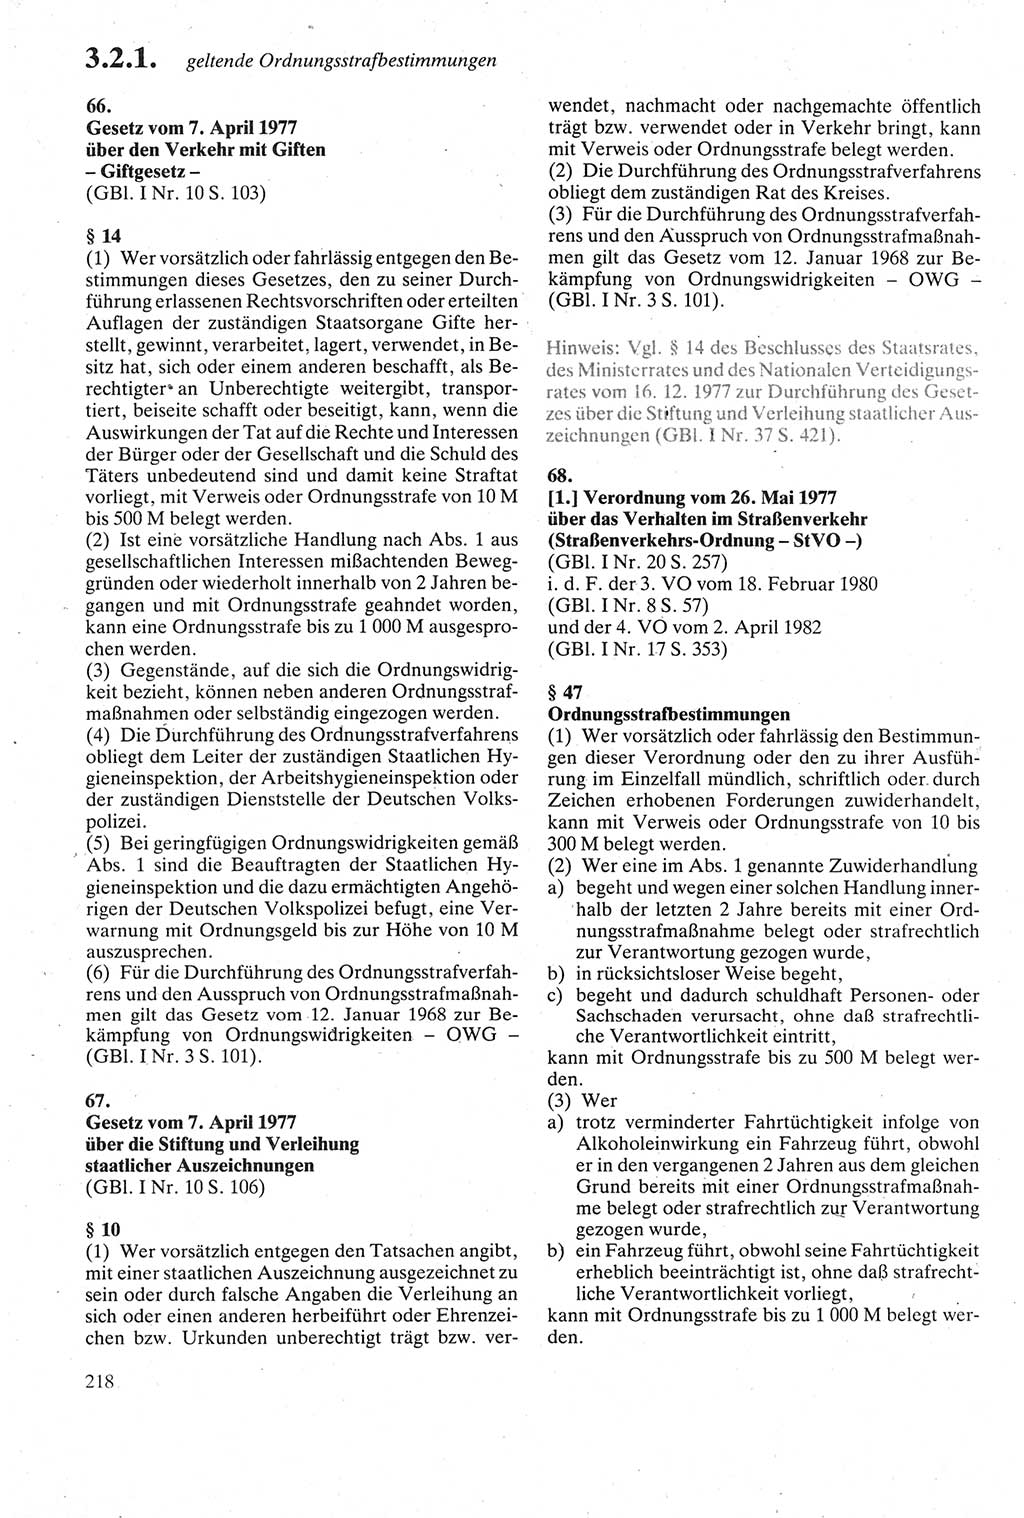 Strafgesetzbuch (StGB) der Deutschen Demokratischen Republik (DDR) sowie angrenzende Gesetze und Bestimmungen 1979, Seite 218 (StGB DDR Ges. Best. 1979, S. 218)